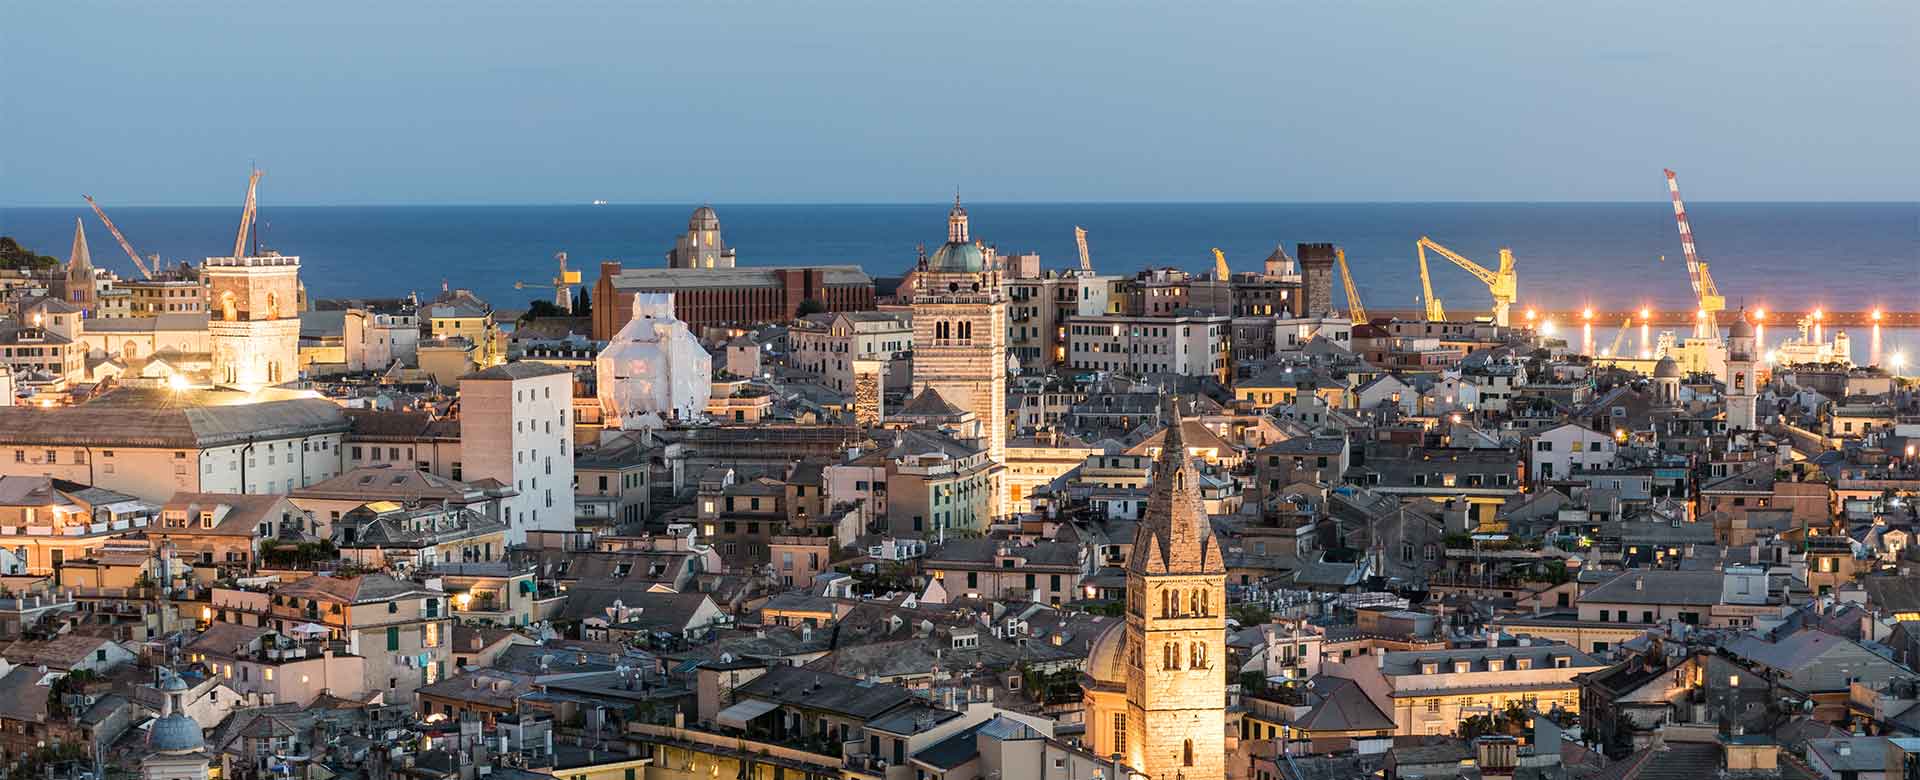 Una veduta del centro storico di Genova